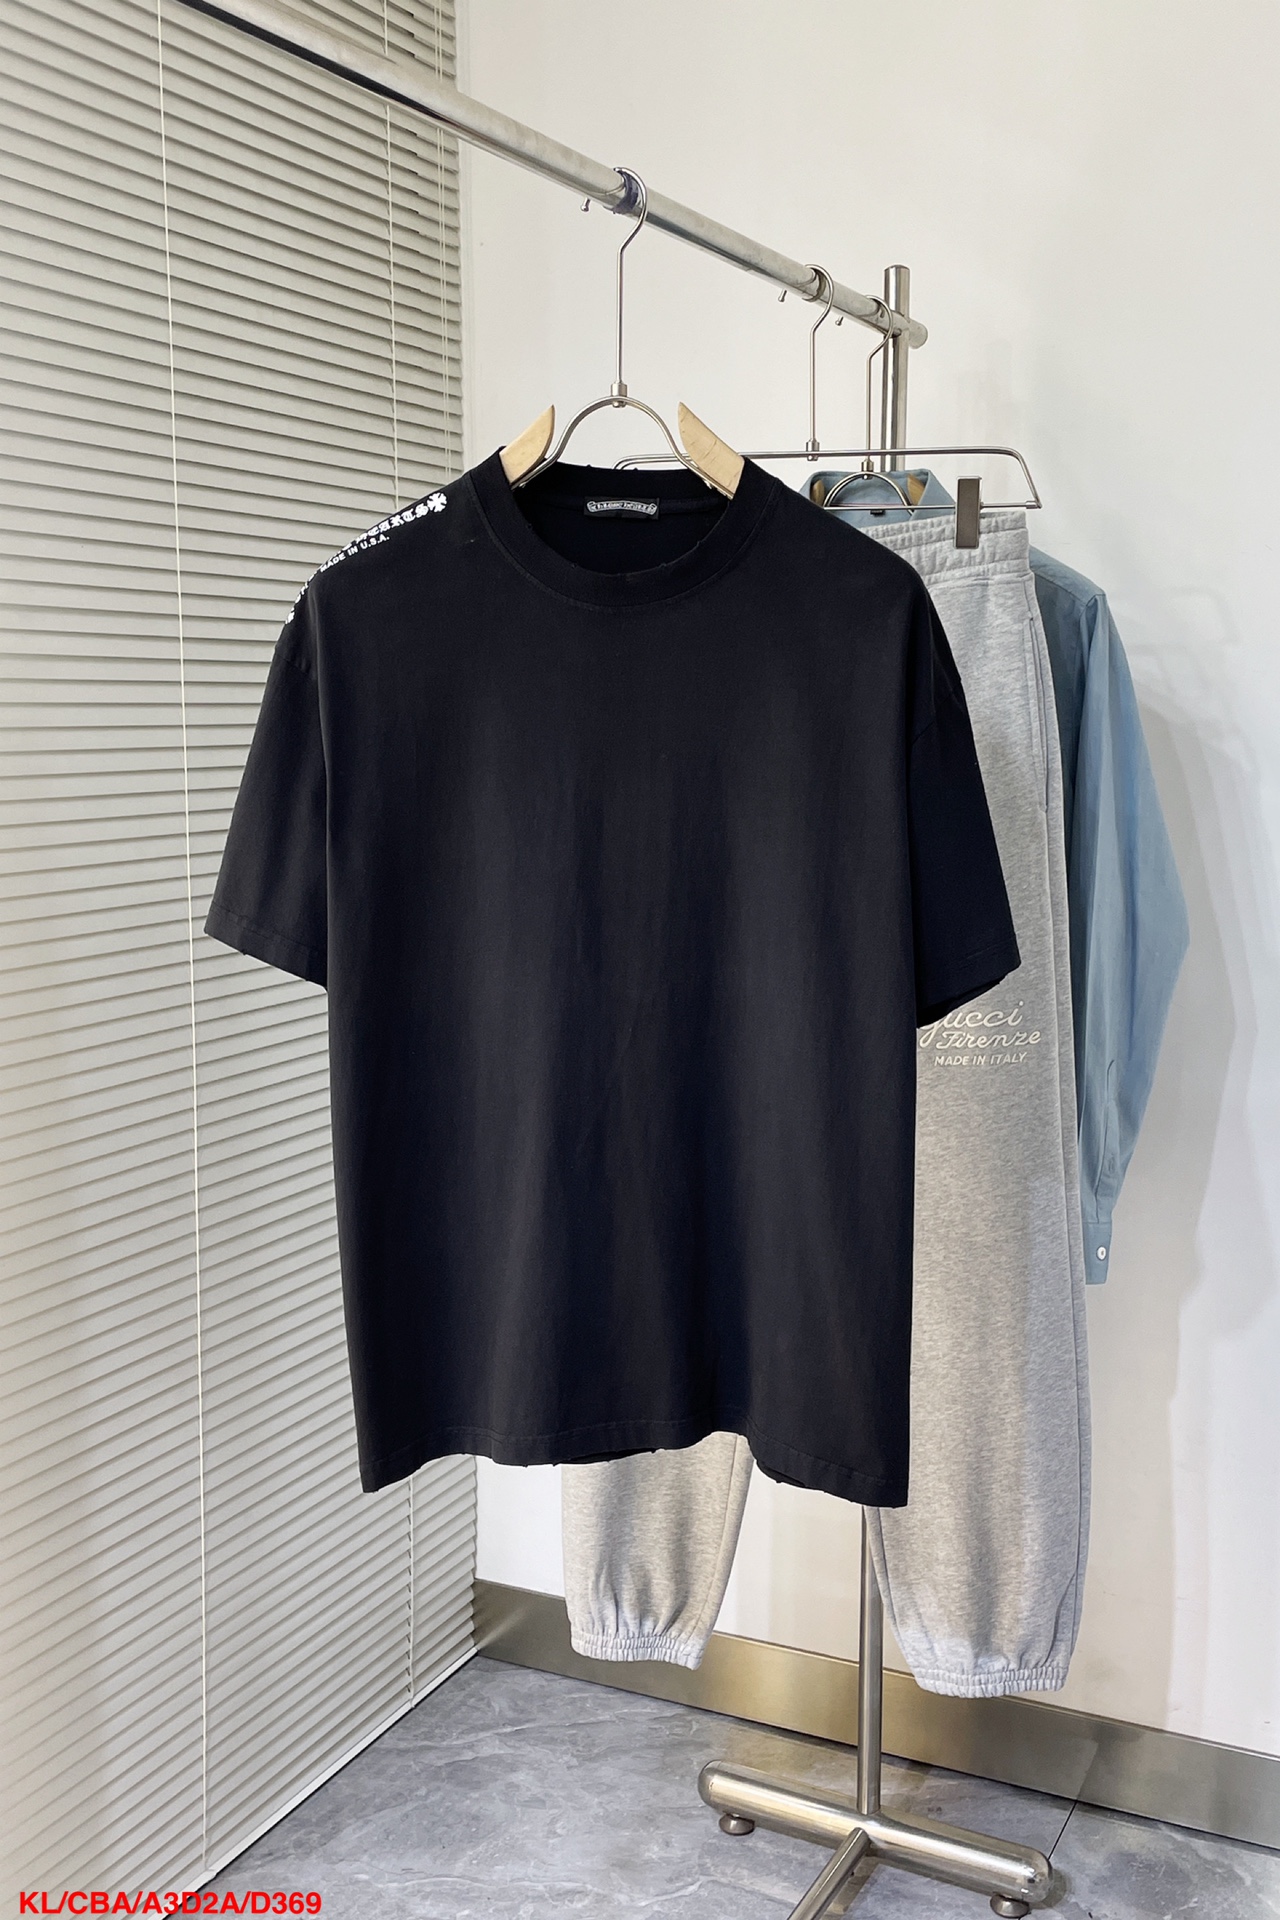 限定販売 クロムハーツtシャツ サイズ感スーパーコピー トップス 純綿 24新品 高級感 シンプル ブラック_1